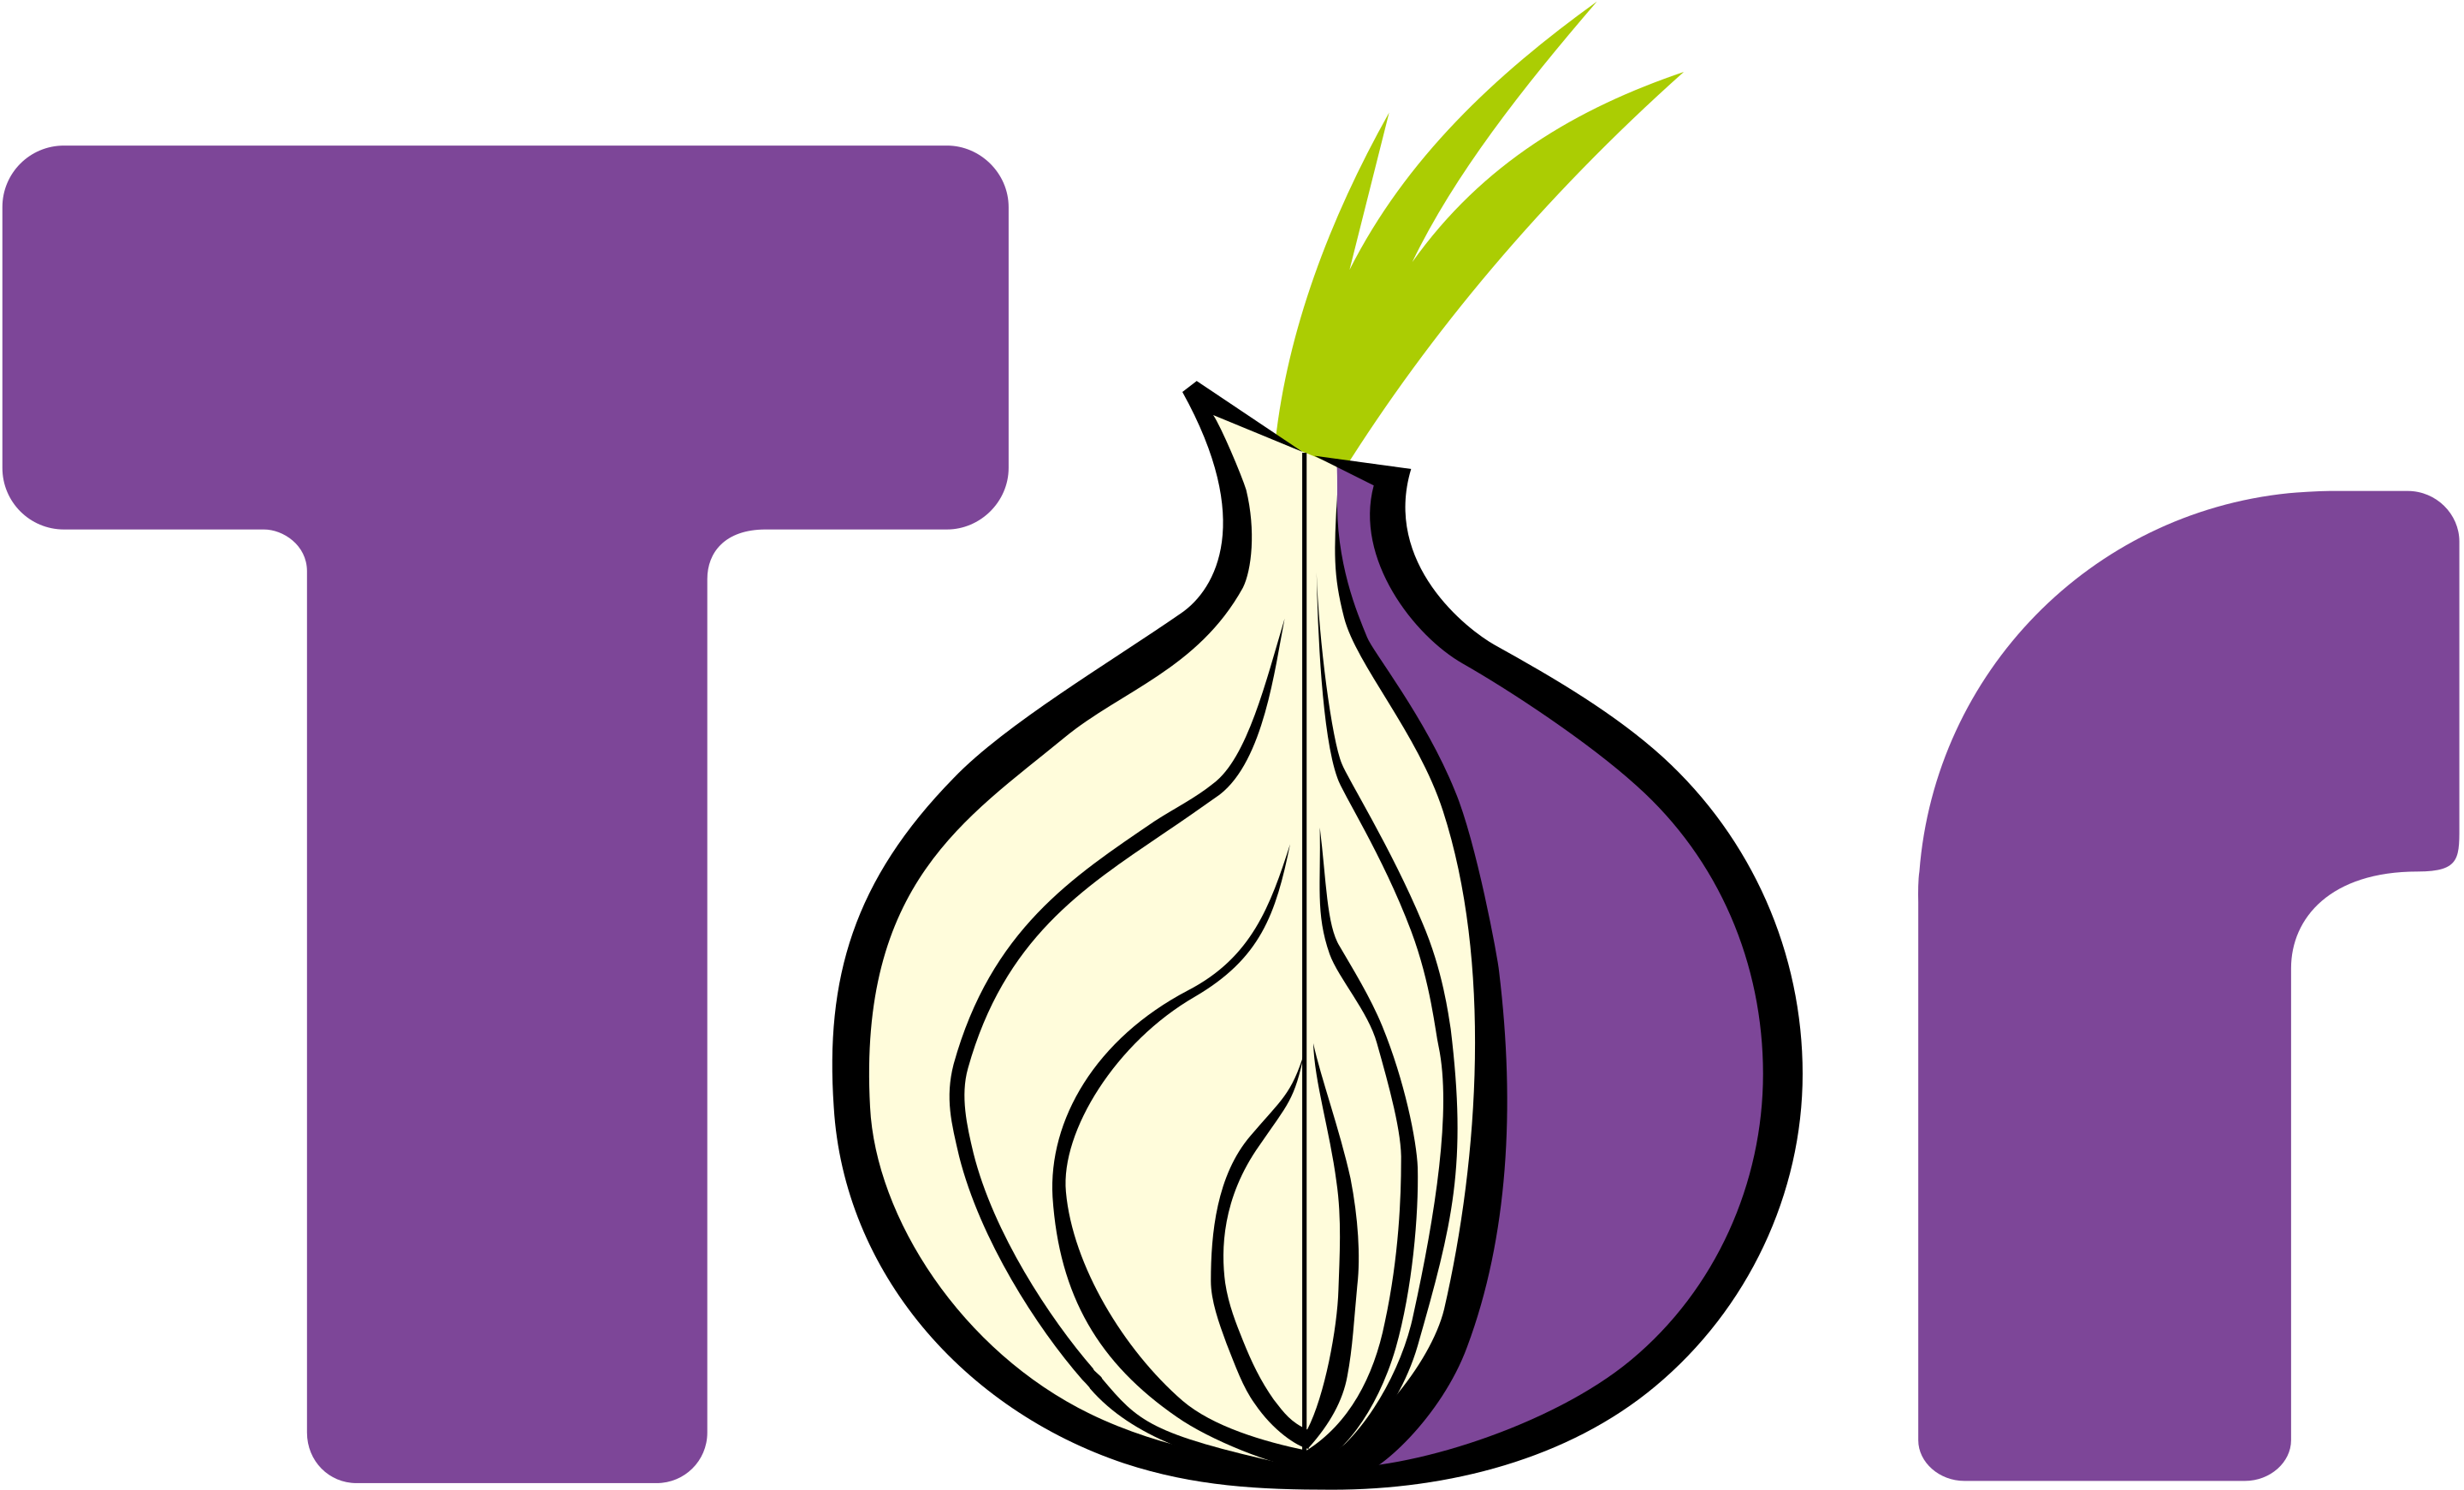 Tor Project - Tor - Onion routing - ПО для анонимного сетевого соединения - Луковая маршрутизация